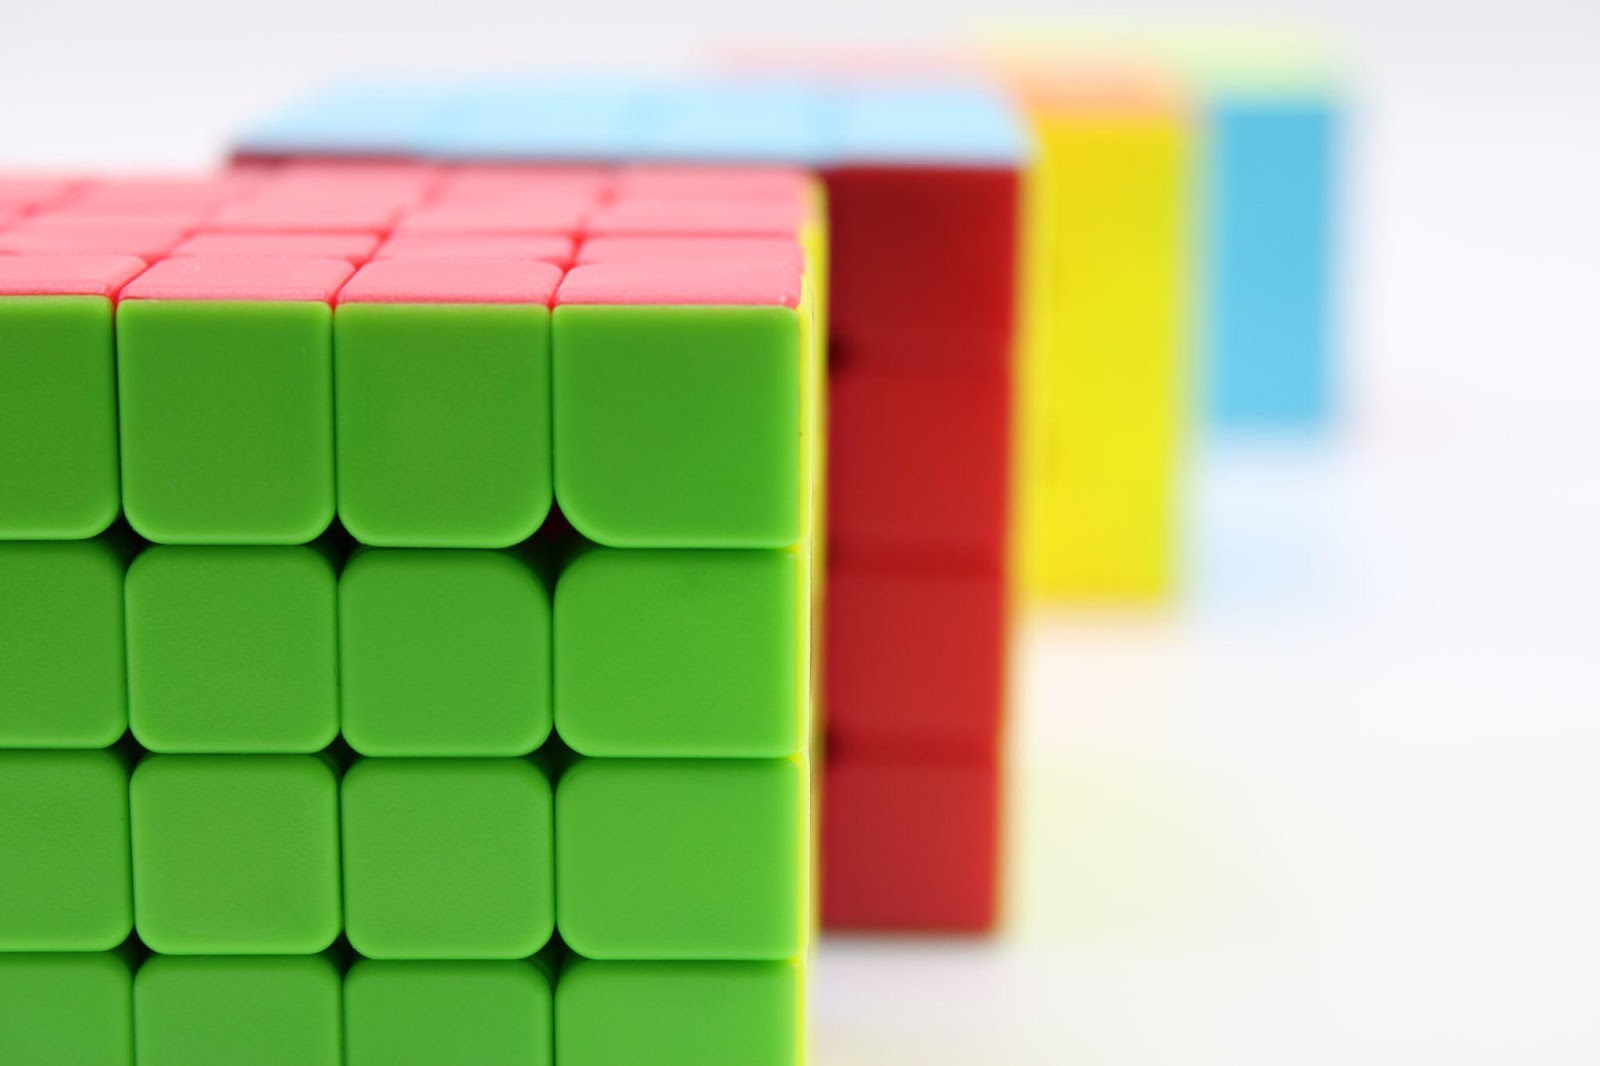 Variationer af Rubi's Cube er kommet på markedet.